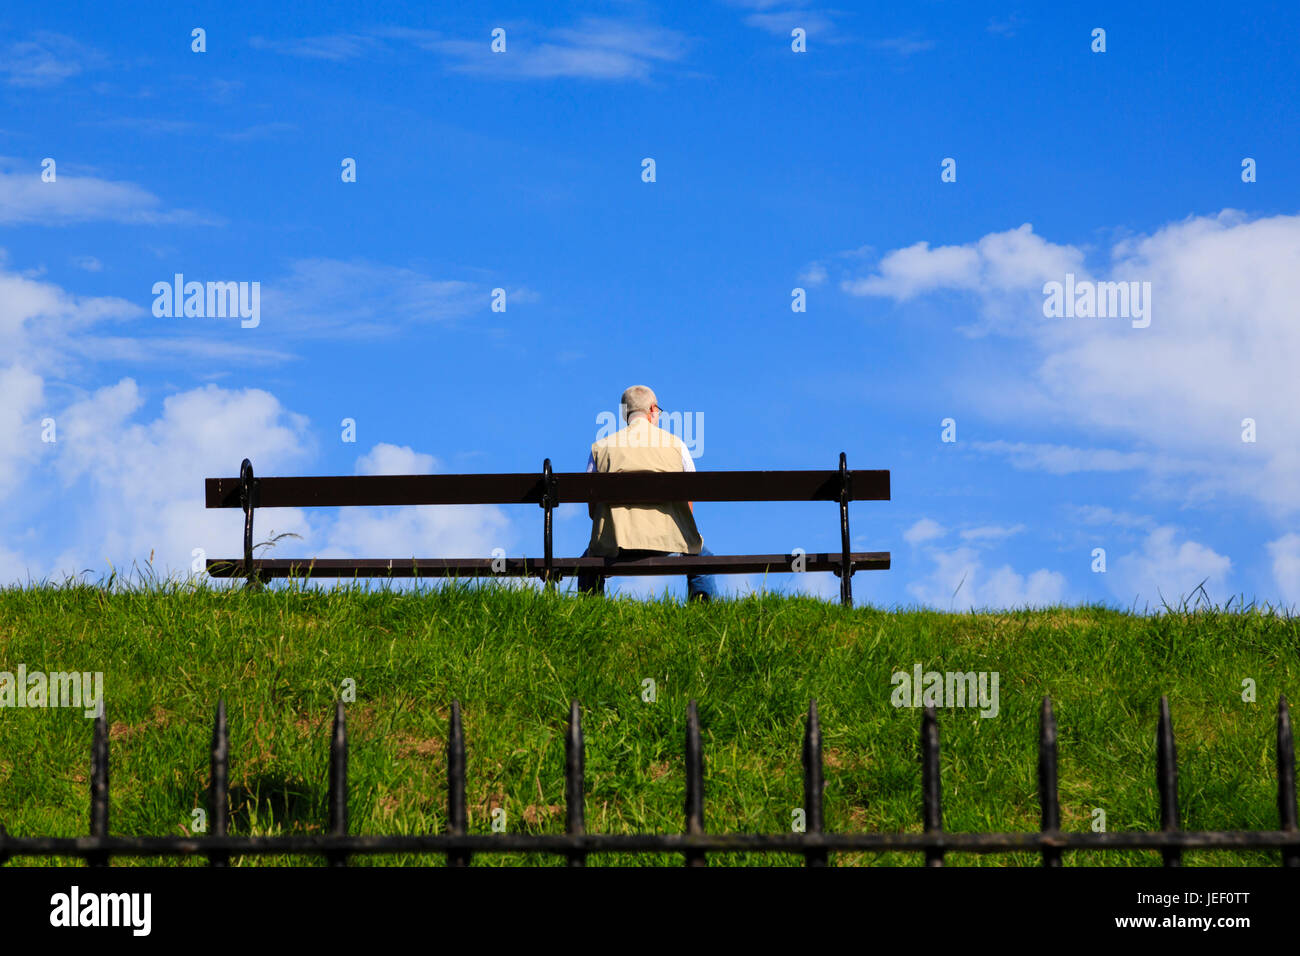 Seniorenmann, der allein auf einer Bank auf einer Grasbank vor einem blauen Himmel sitzt. An den Wänden von Berwick-upon-Tweed. Die nördlichste Stadt Englands. Stockfoto